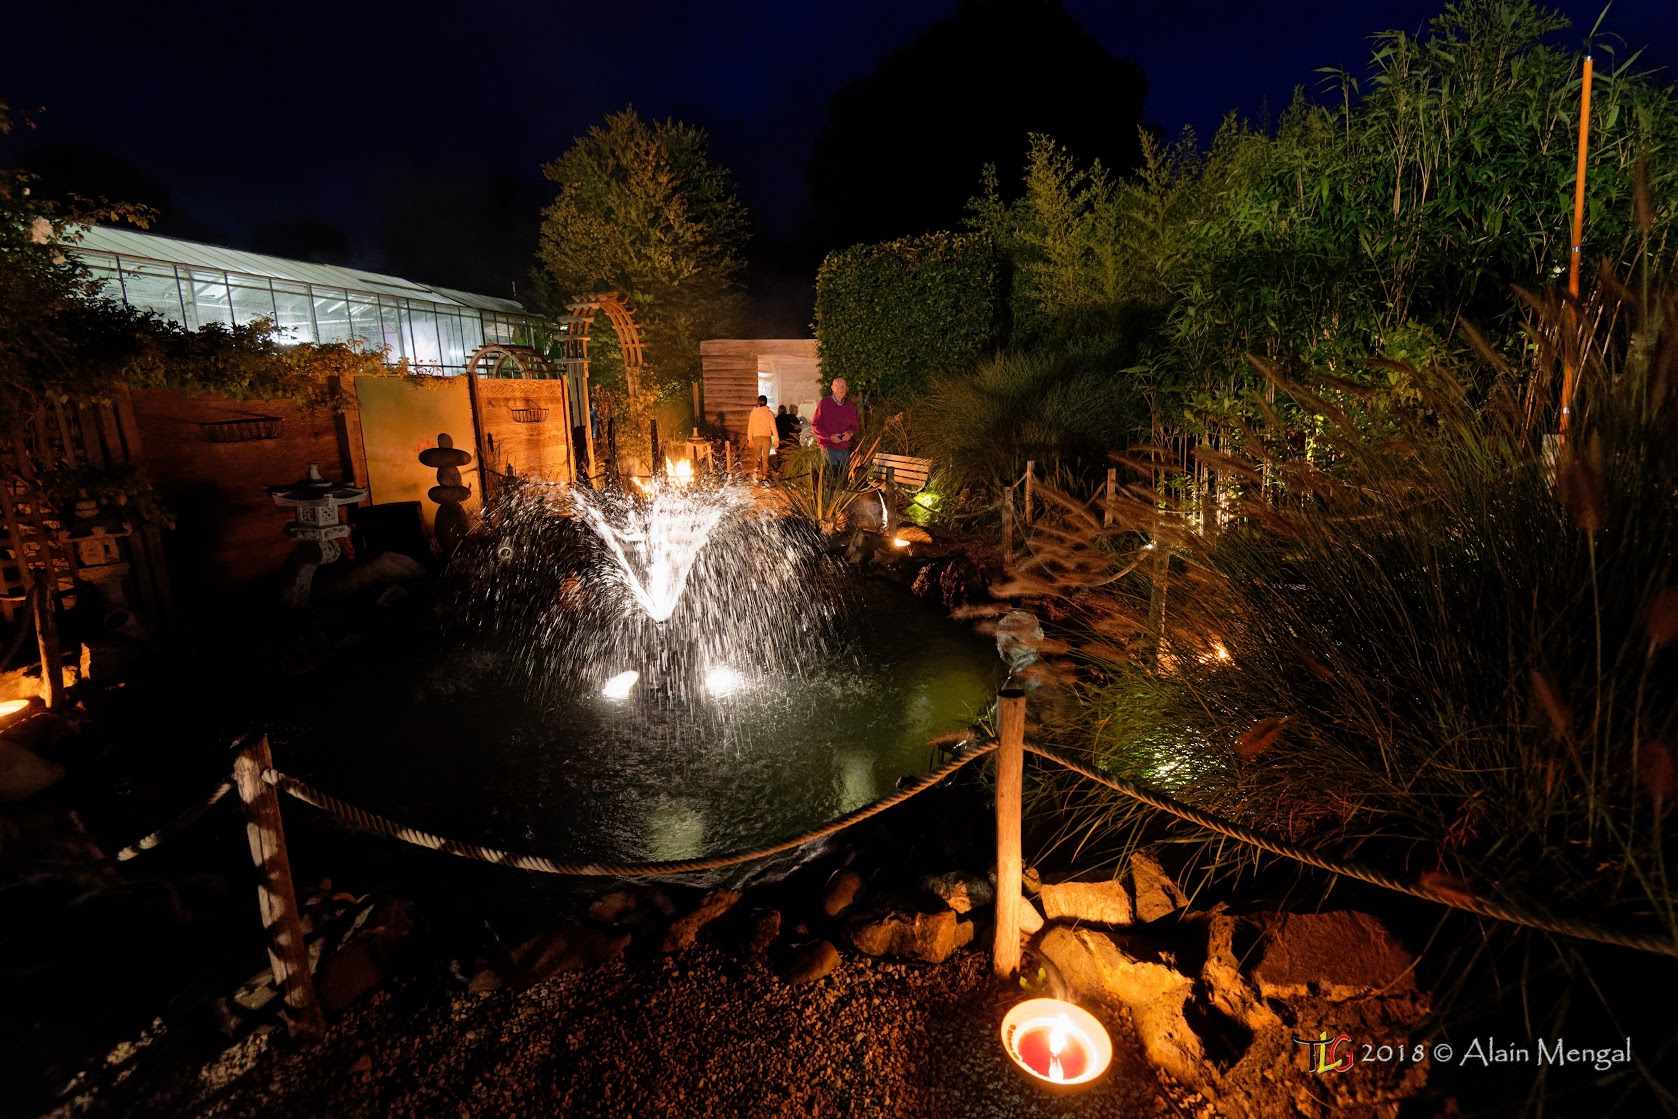 Éclairage de bassin : idées lumineuses pour le bassin de jardin